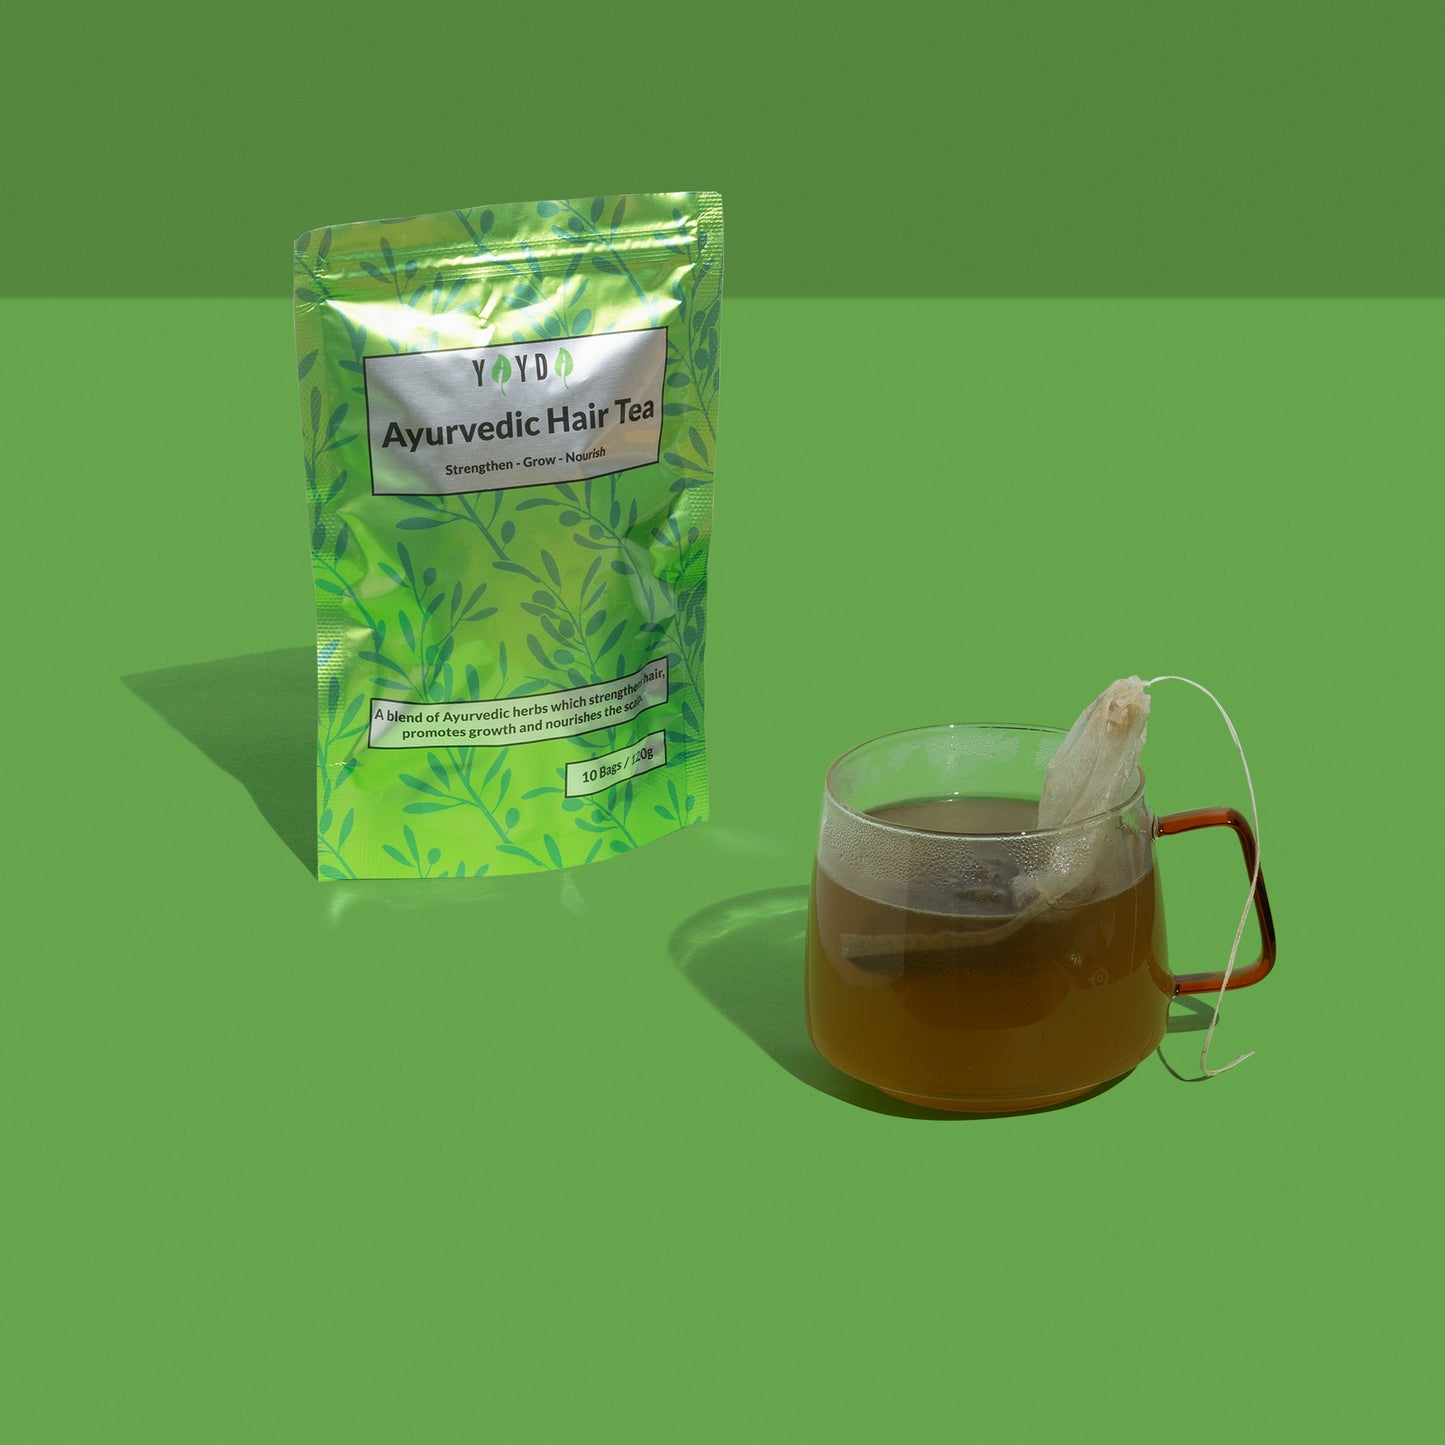 Green hair tea bag and a glass mug with tea